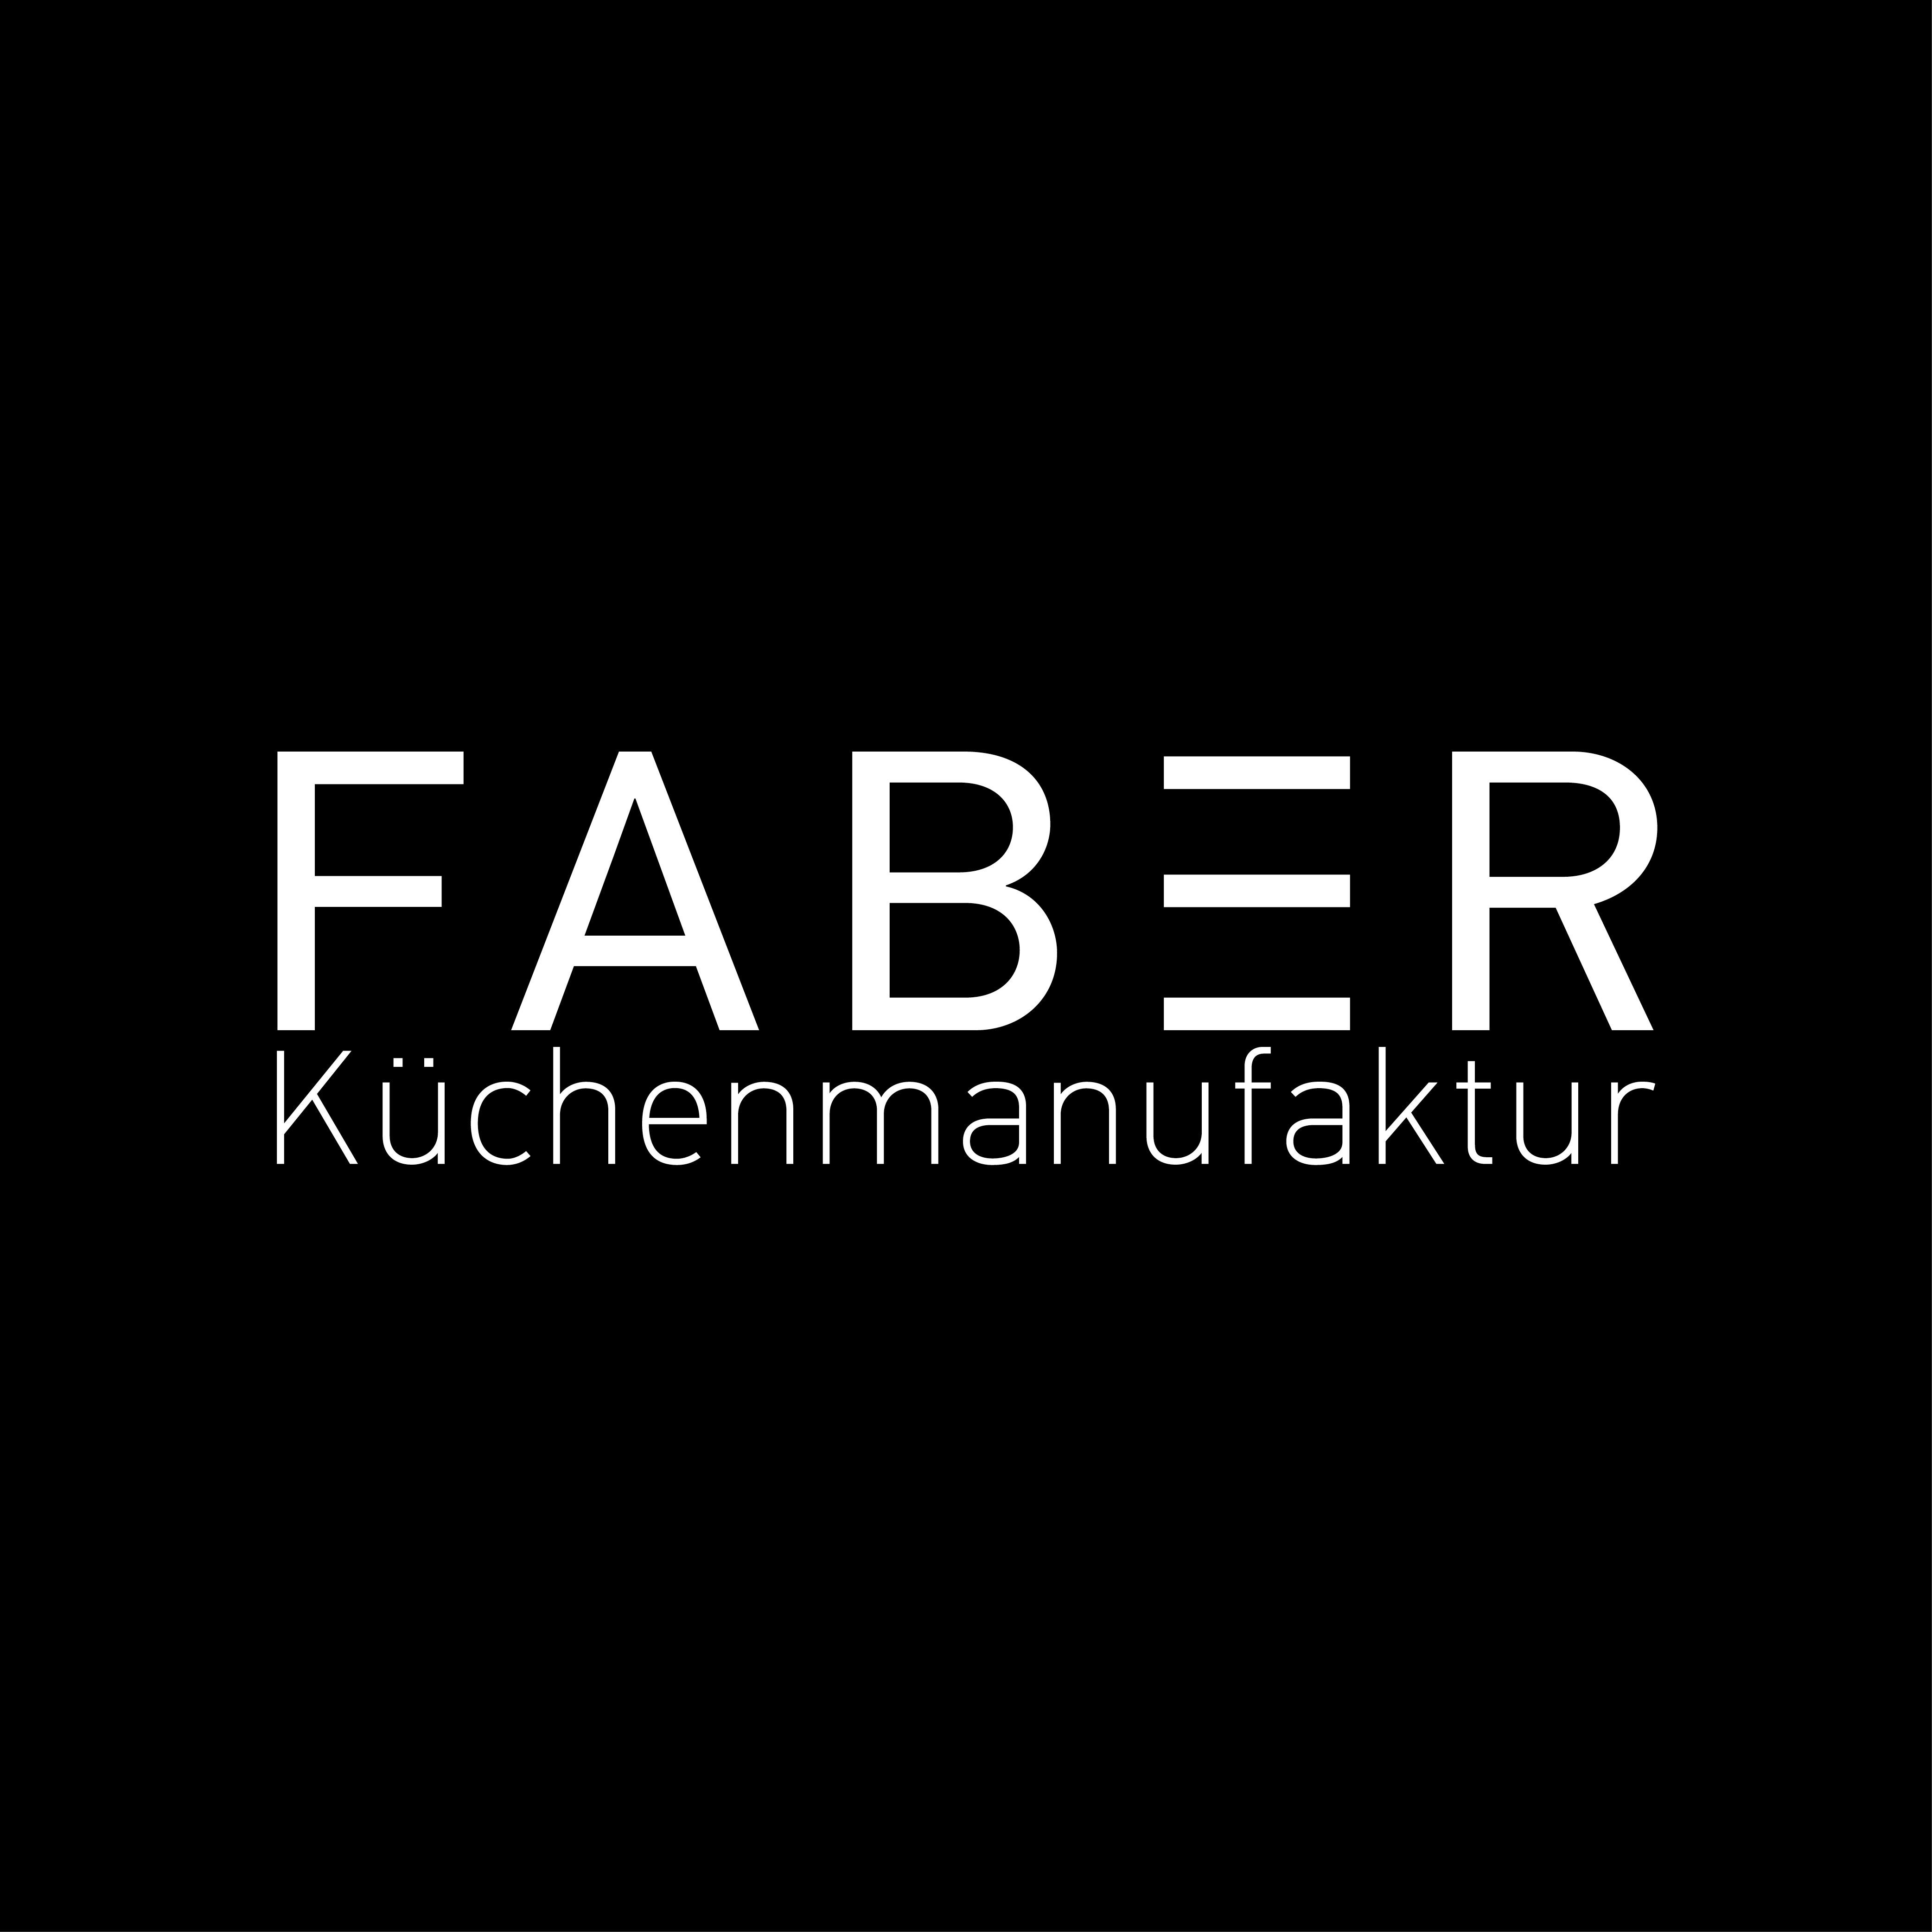 FABER Küchenmanufaktur GmbH in Flein - Logo